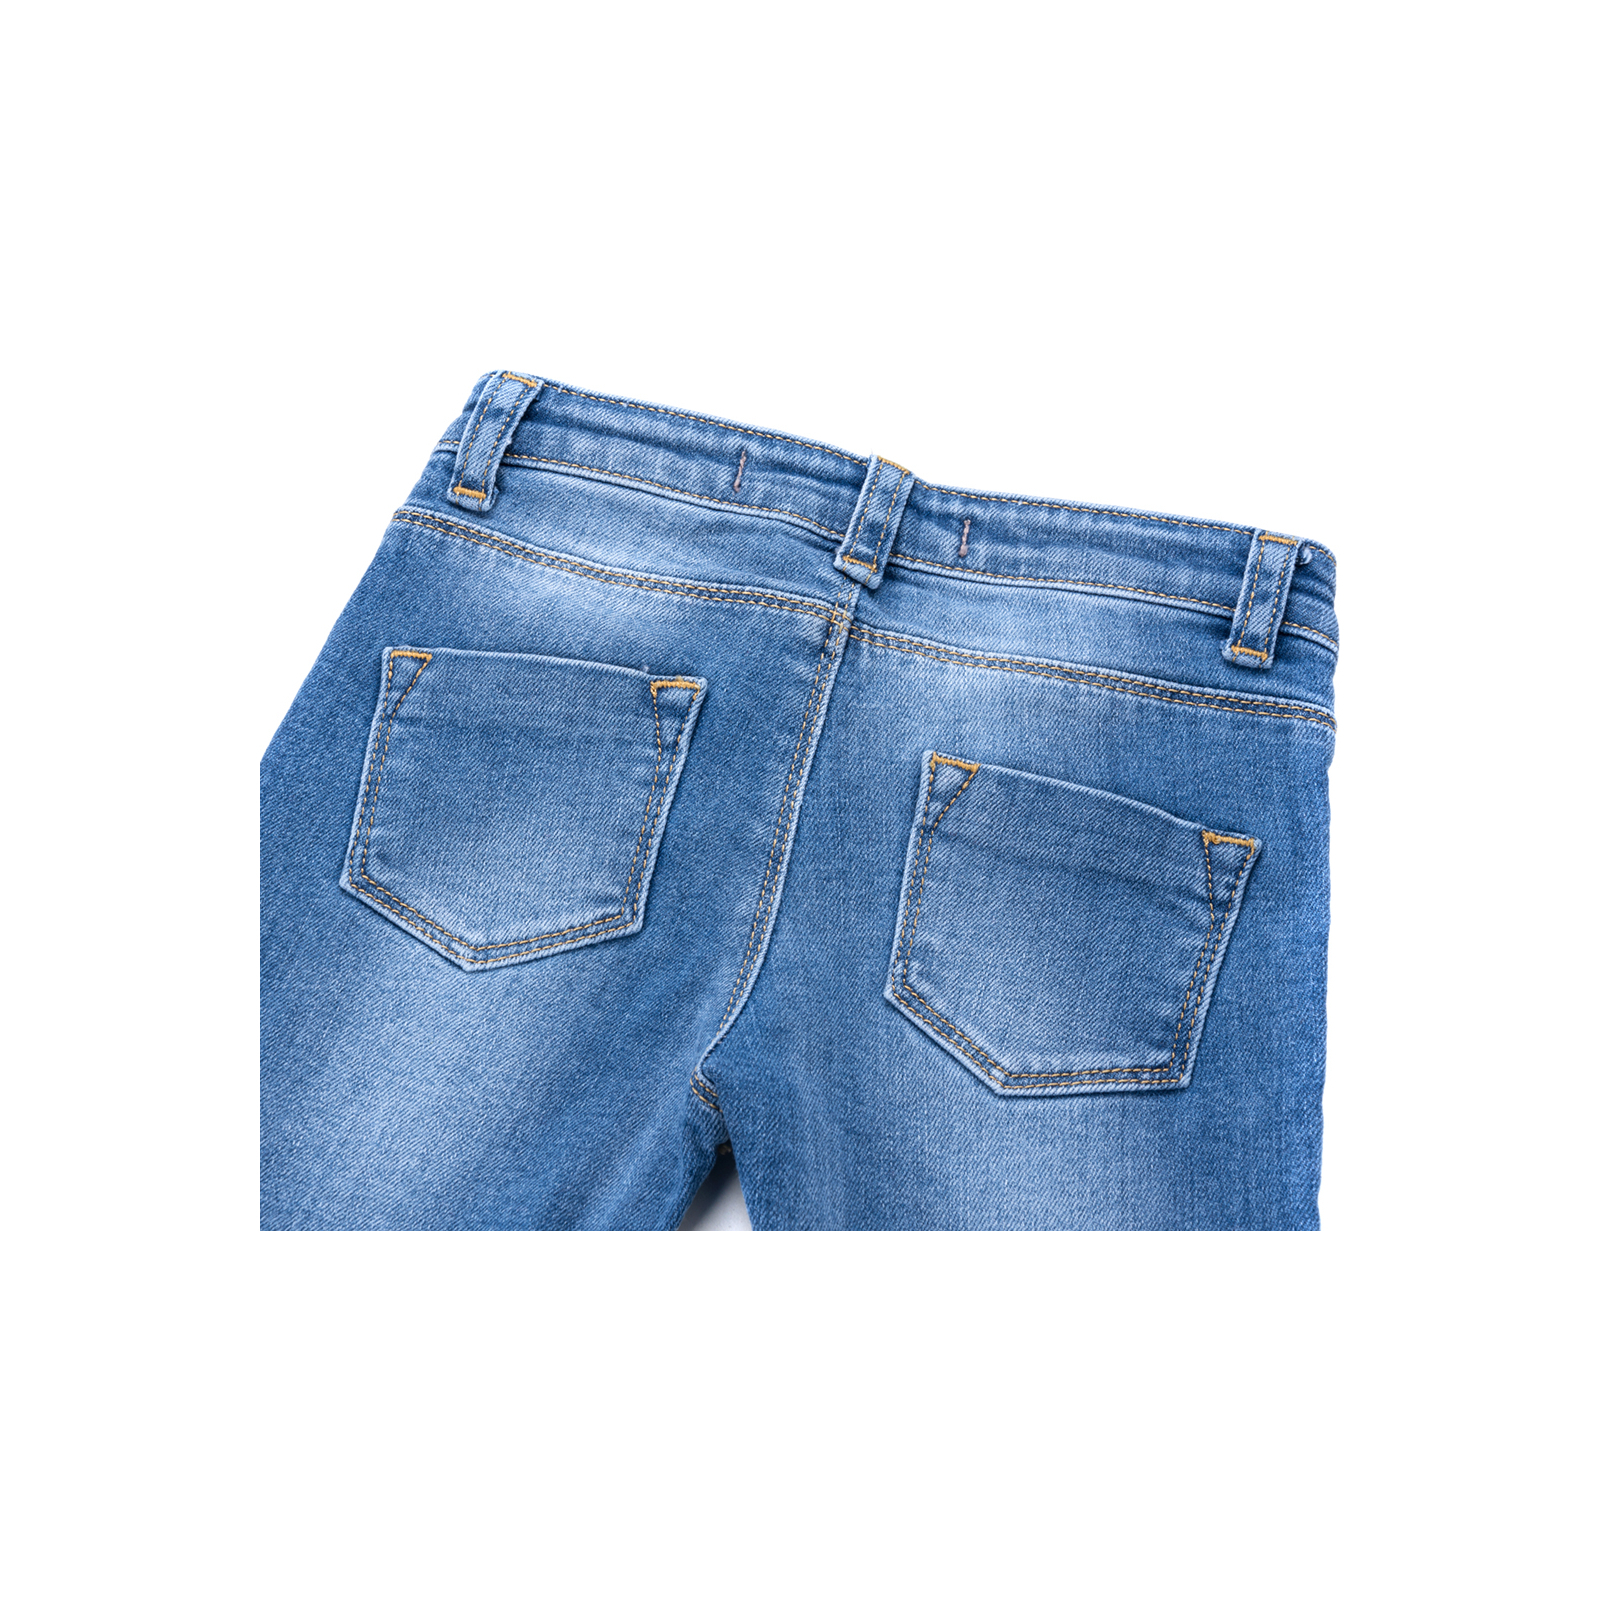 Джинсы Breeze джинсовые с цветочками (OZ-17703-98G-jeans) изображение 5